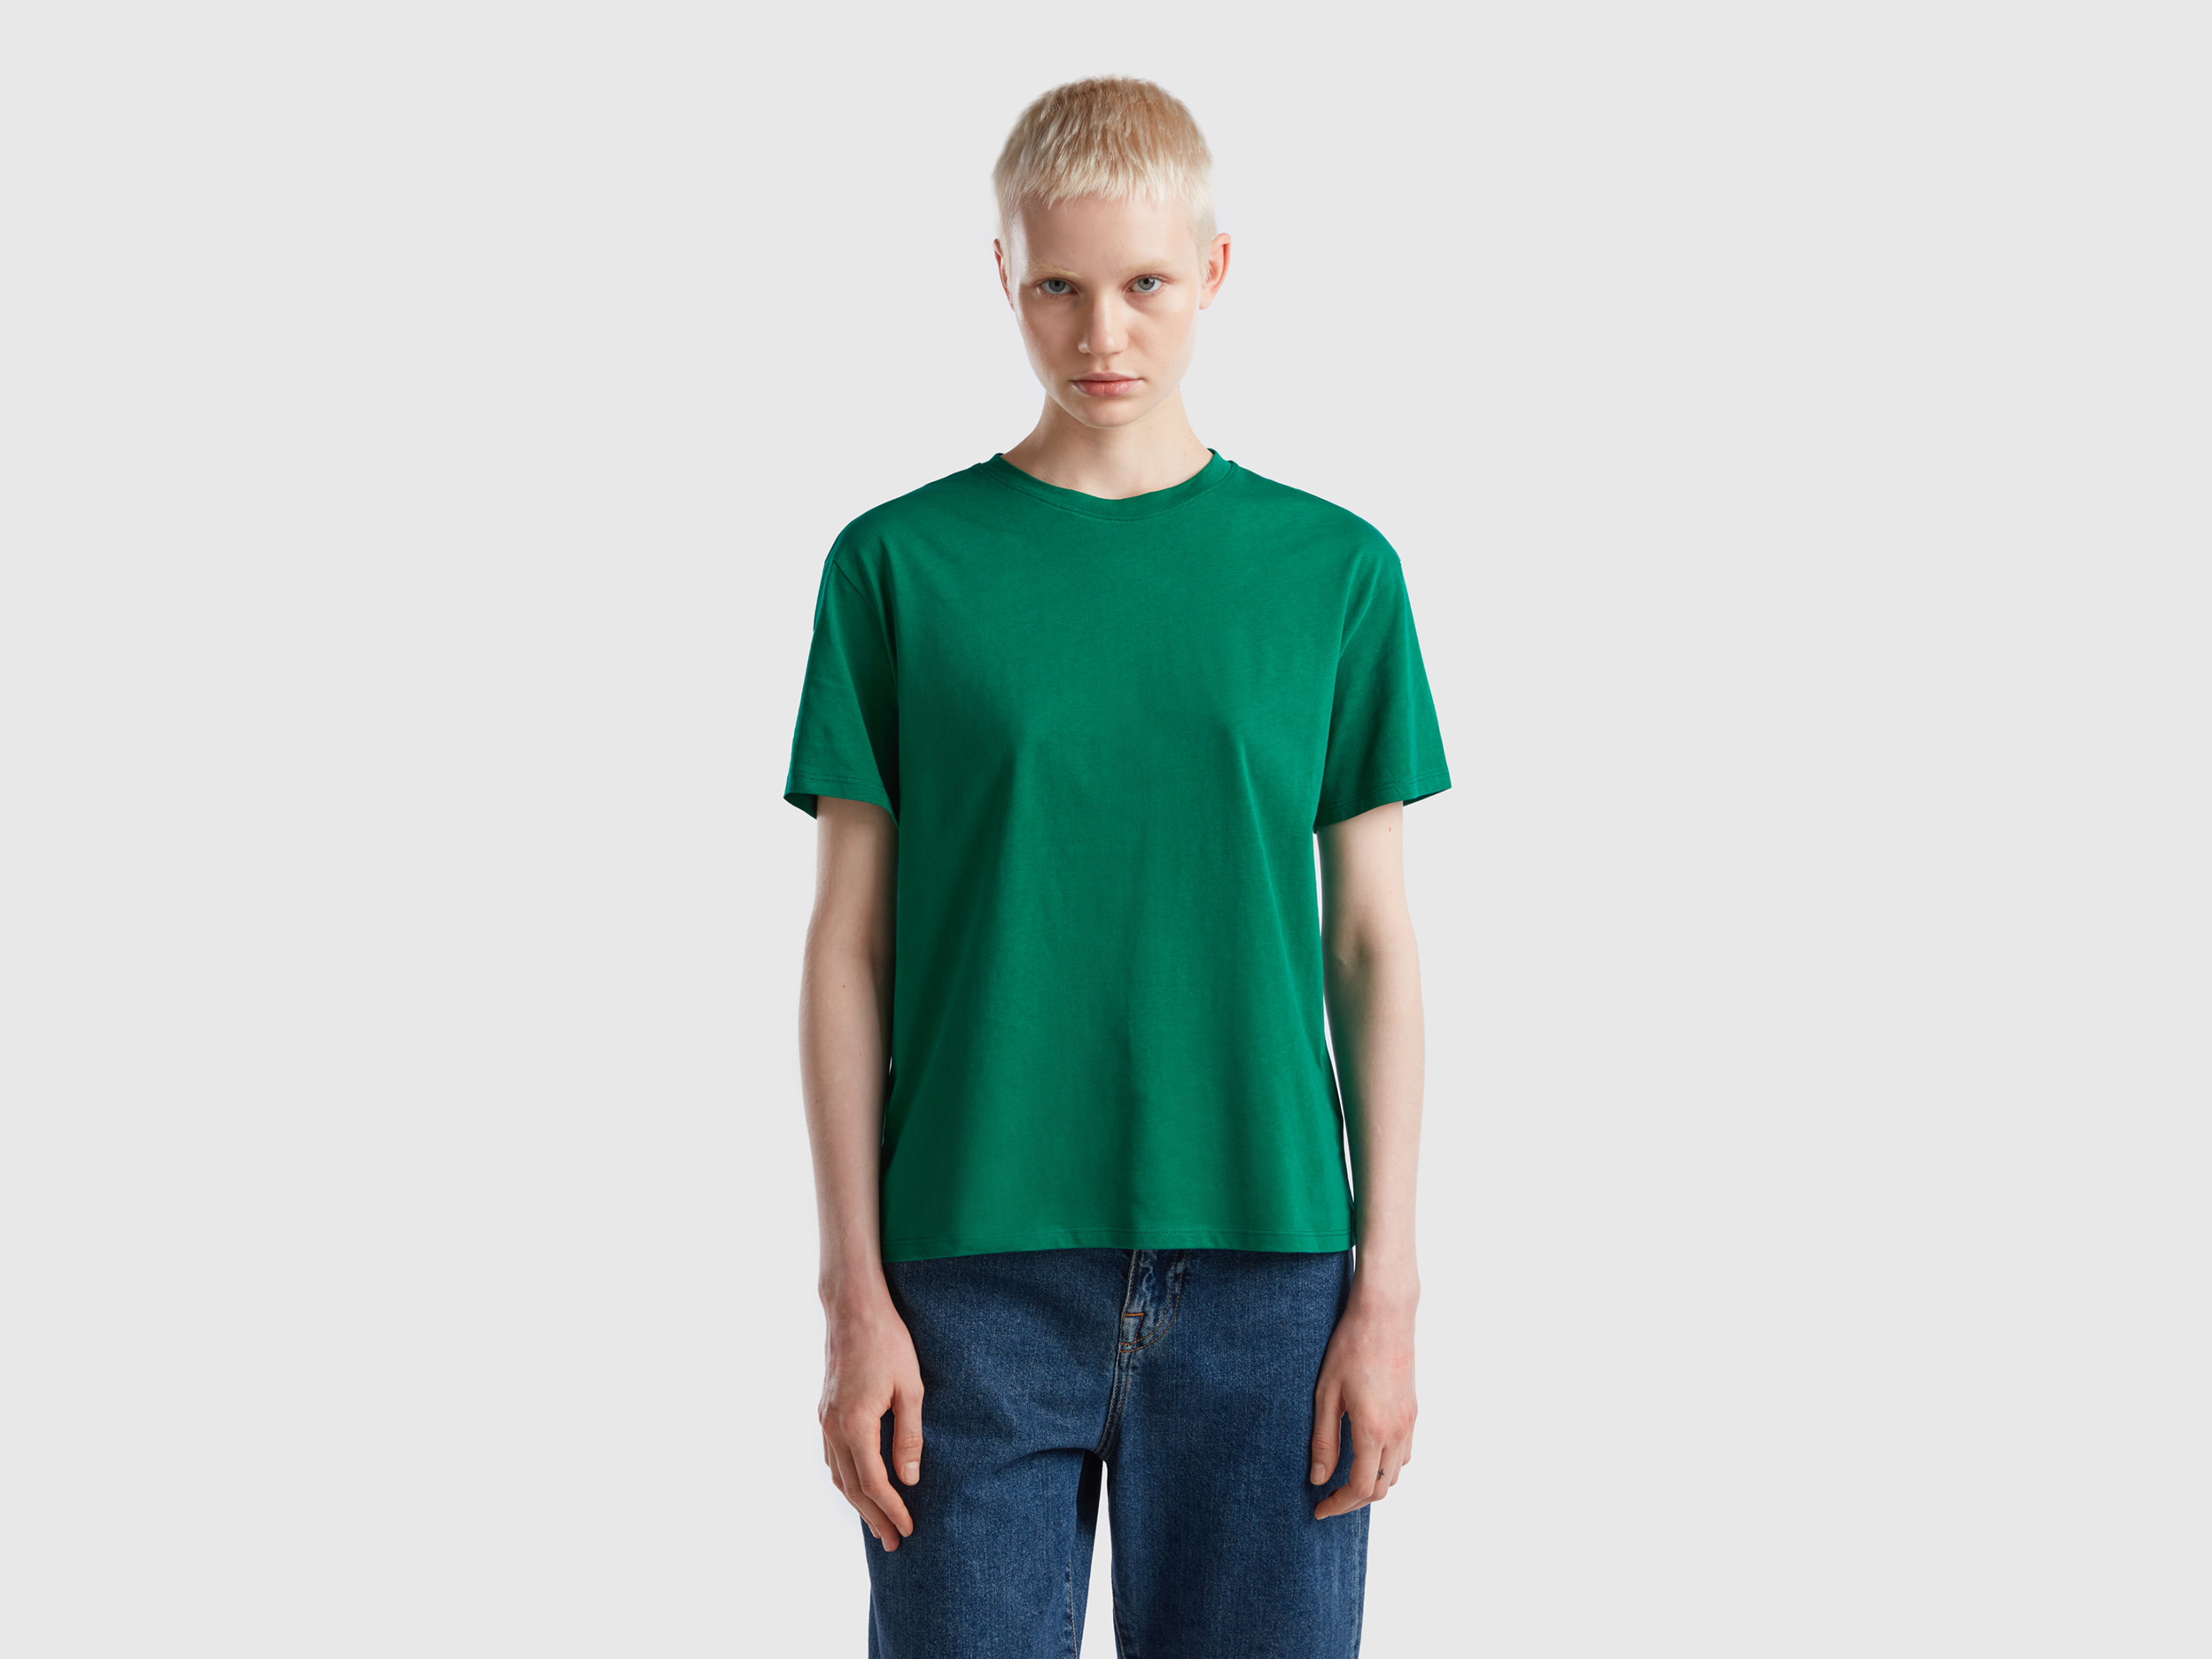 Benetton, Short Sleeve 100% Cotton T-shirt, size S, Green, Women